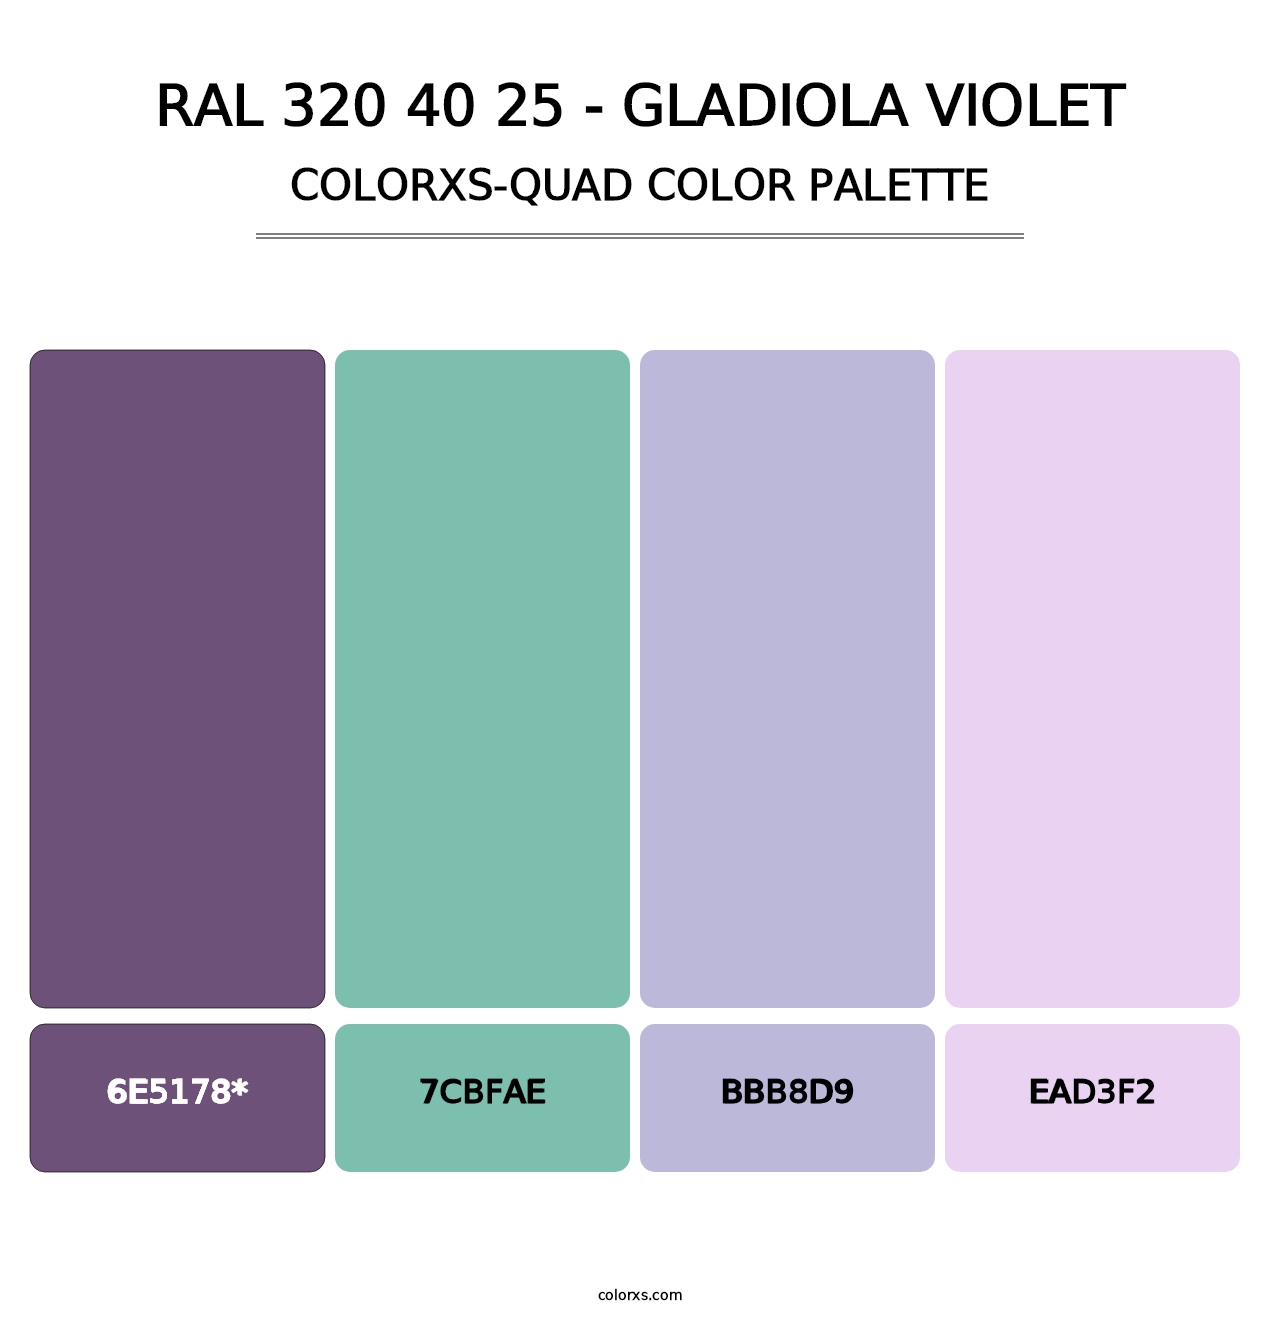 RAL 320 40 25 - Gladiola Violet - Colorxs Quad Palette